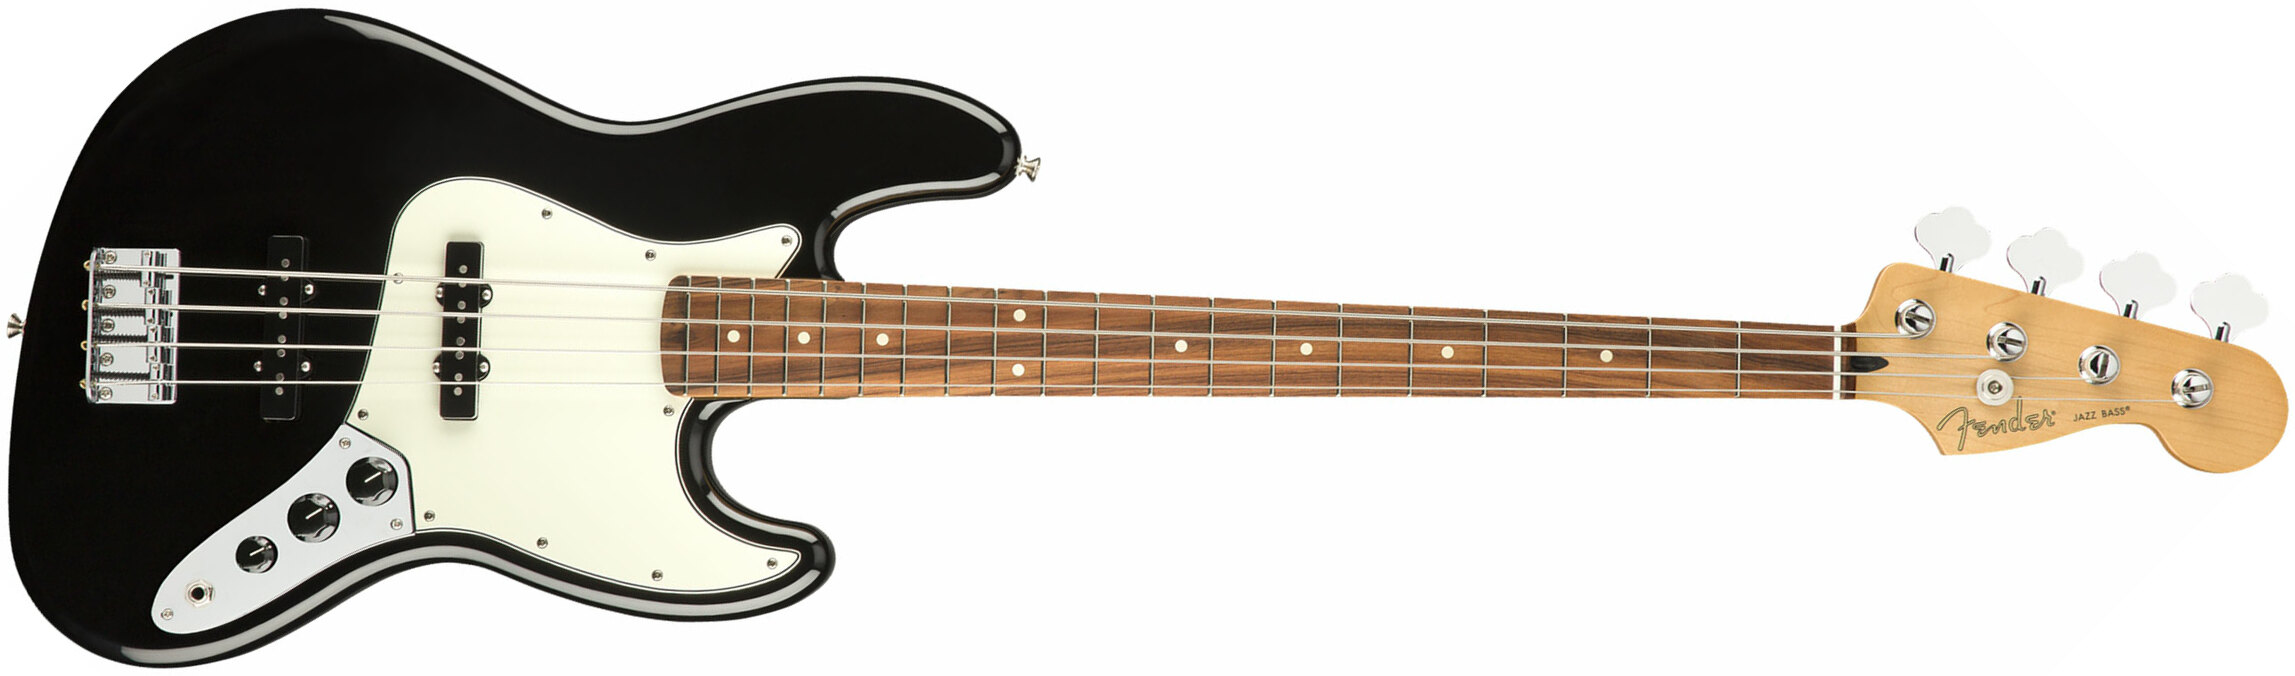 Fender Jazz Bass Player Mex Pf - Black - Bajo eléctrico de cuerpo sólido - Main picture